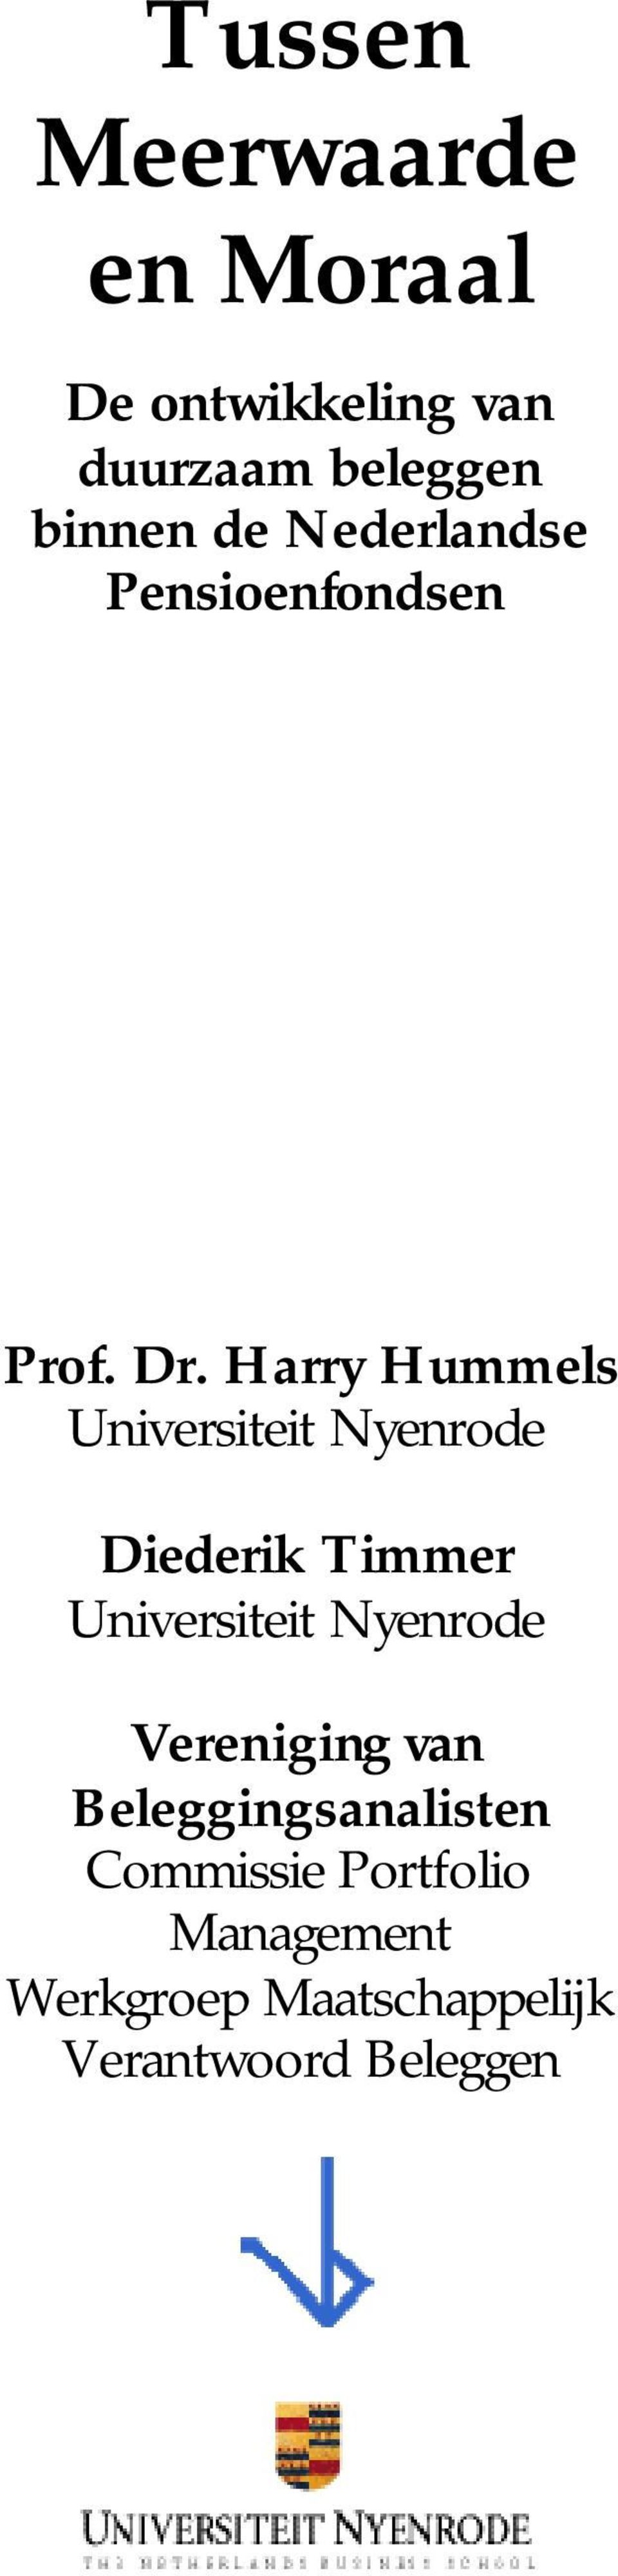 Harry Hummels Universiteit Nyenrode Diederik Timmer Universiteit Nyenrode